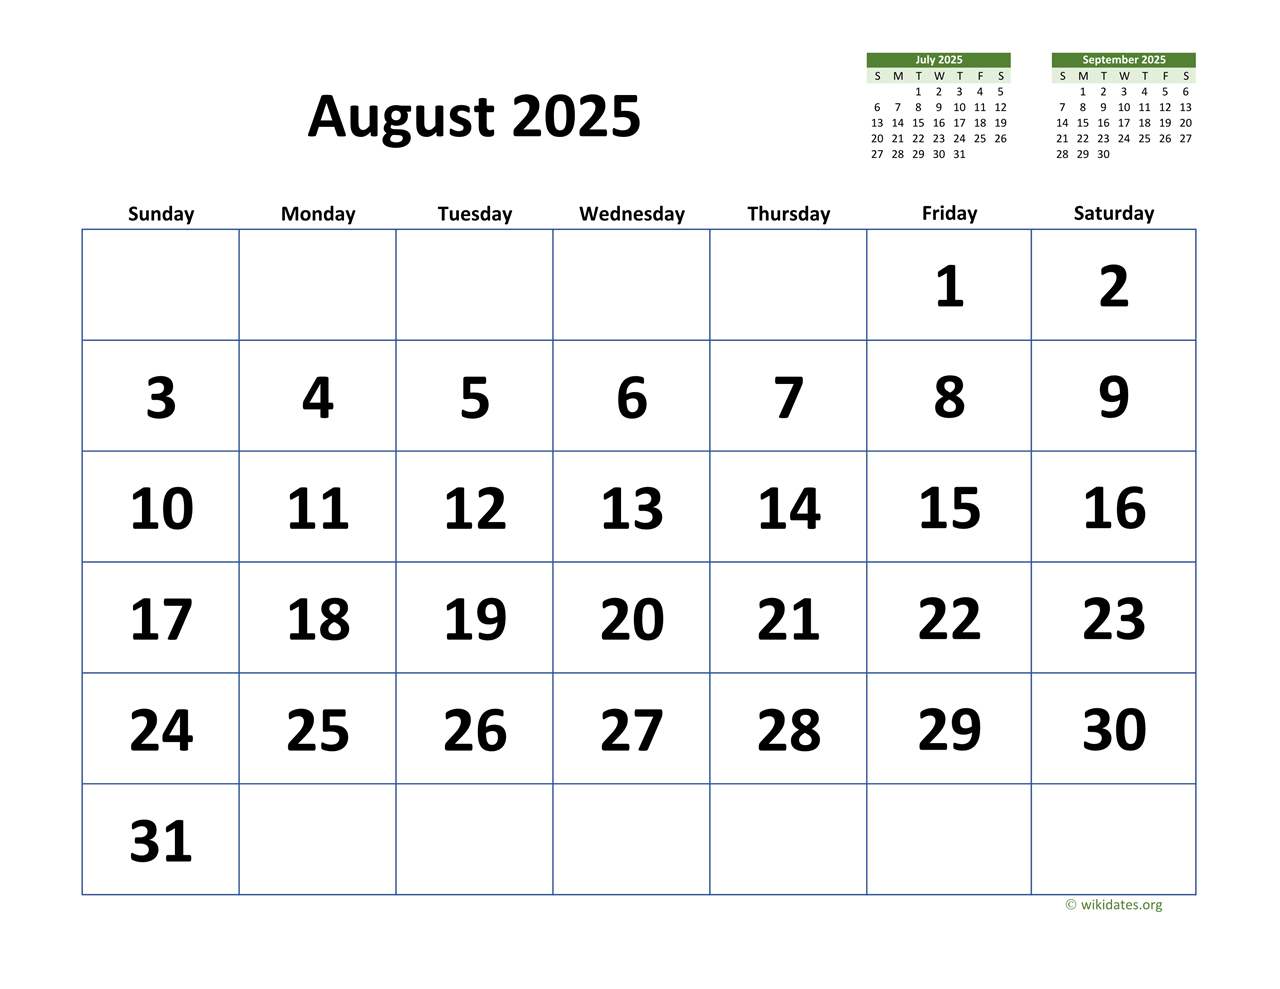 Wiki Calendar August 2025 